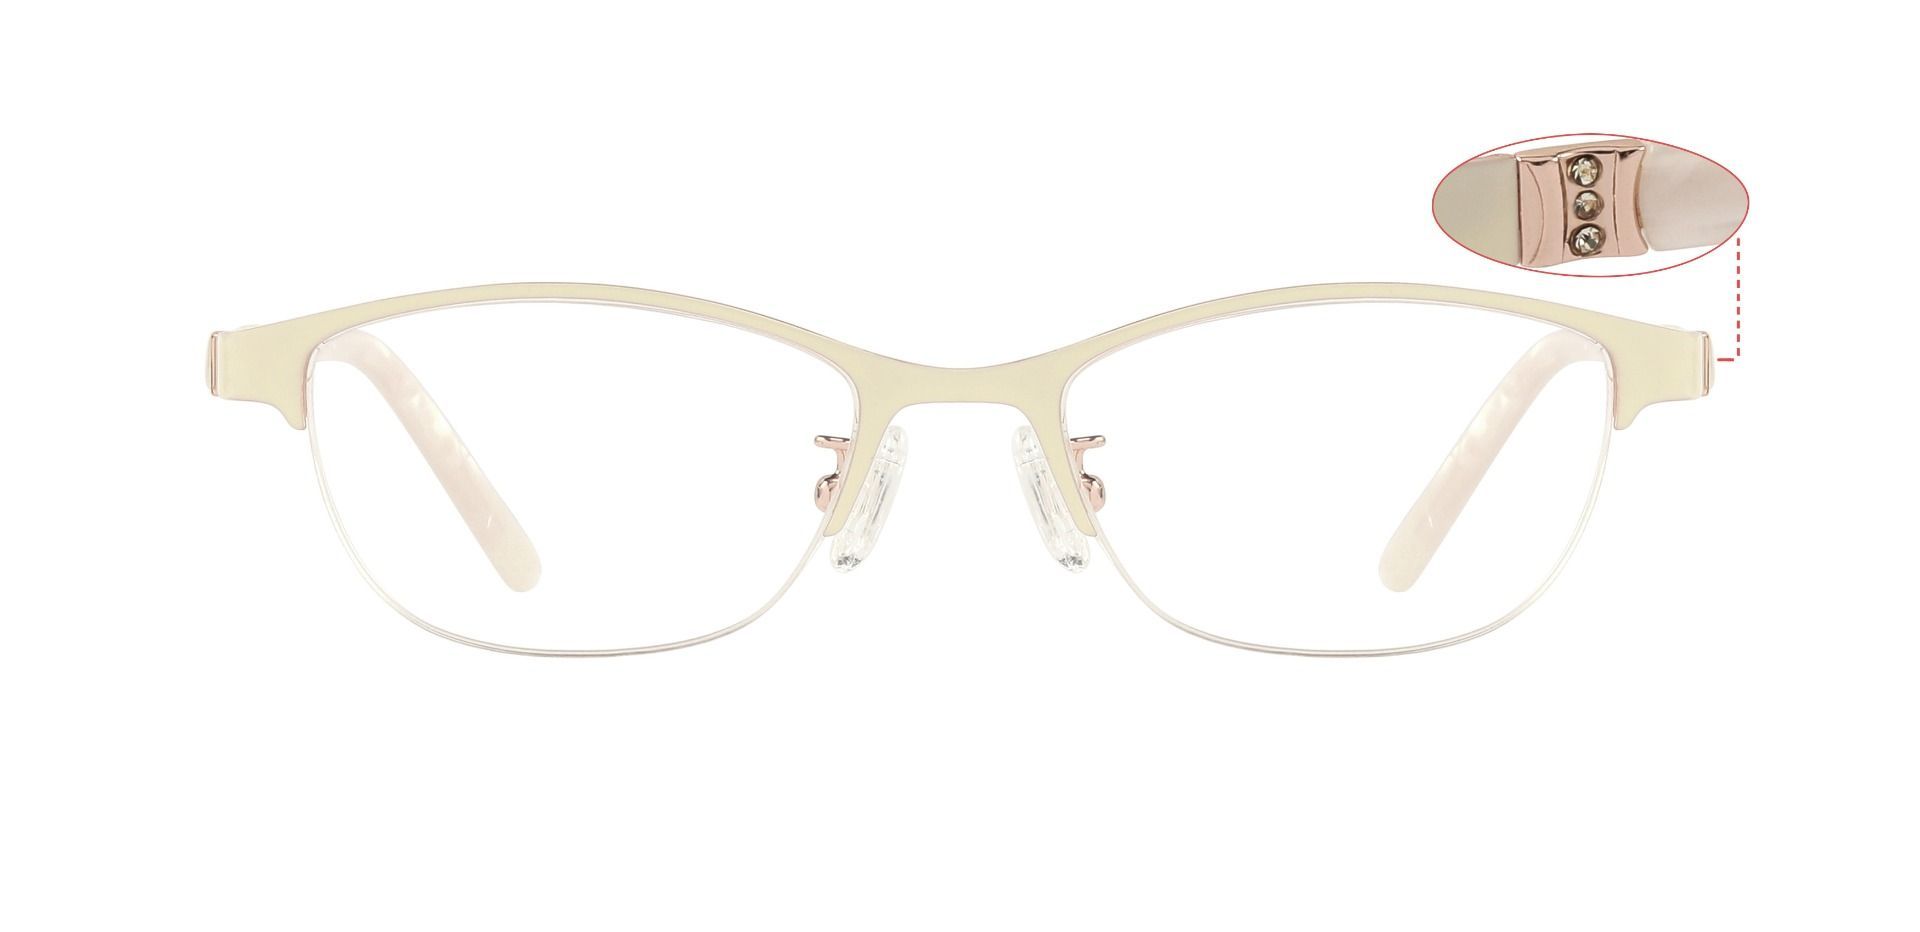 Versace VE 1028-B 1000 57mm Black Silver Eyeglasses | Black silver,  Eyeglasses, Versace glasses